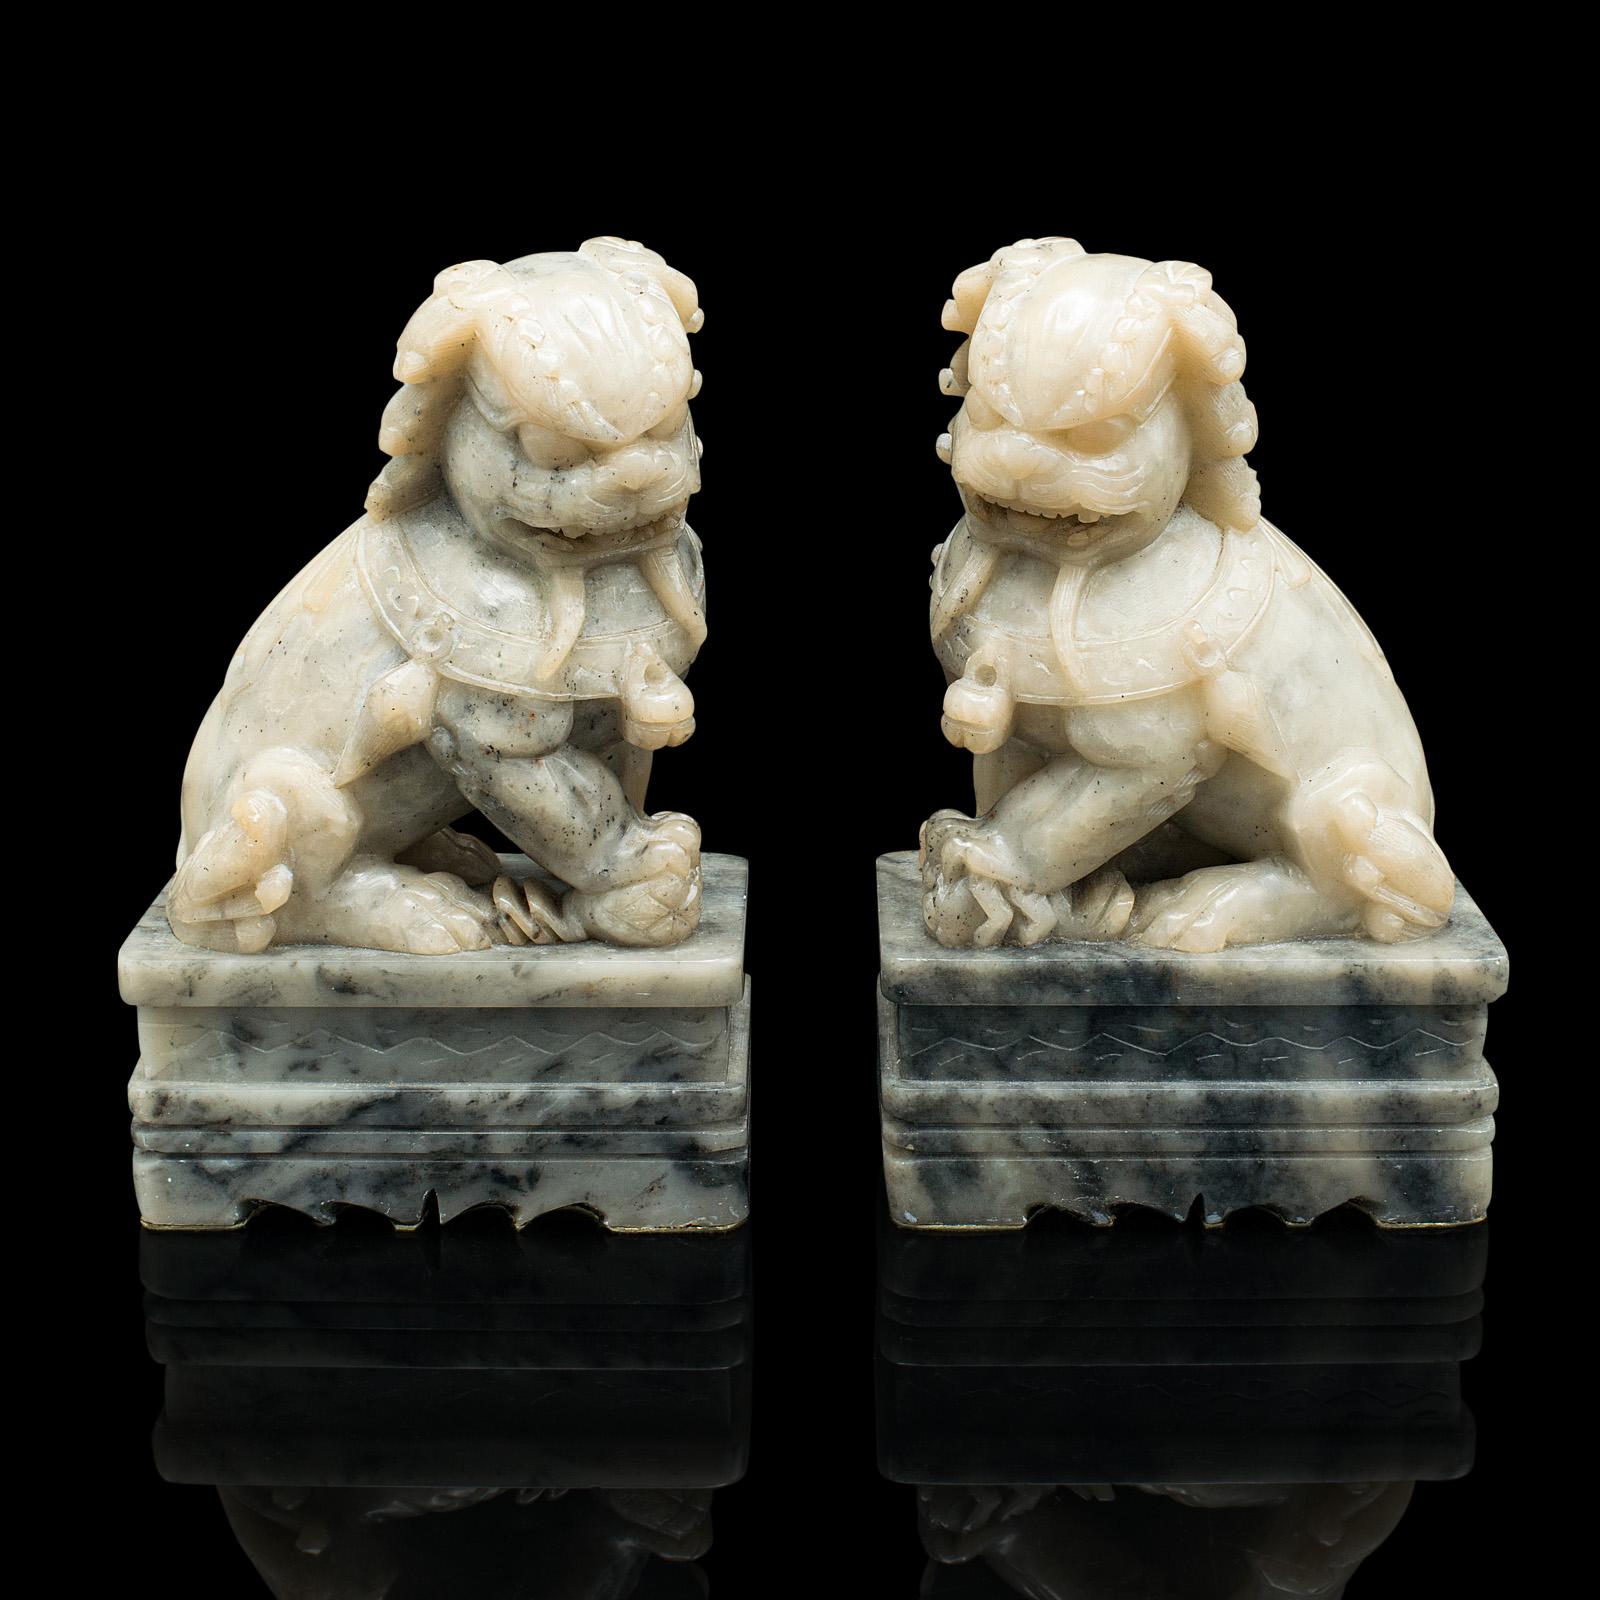 Dies ist ein Paar von antiken orientalischen Hund Buchstützen. Eine chinesische, dekorative Buchablage aus Speckstein 